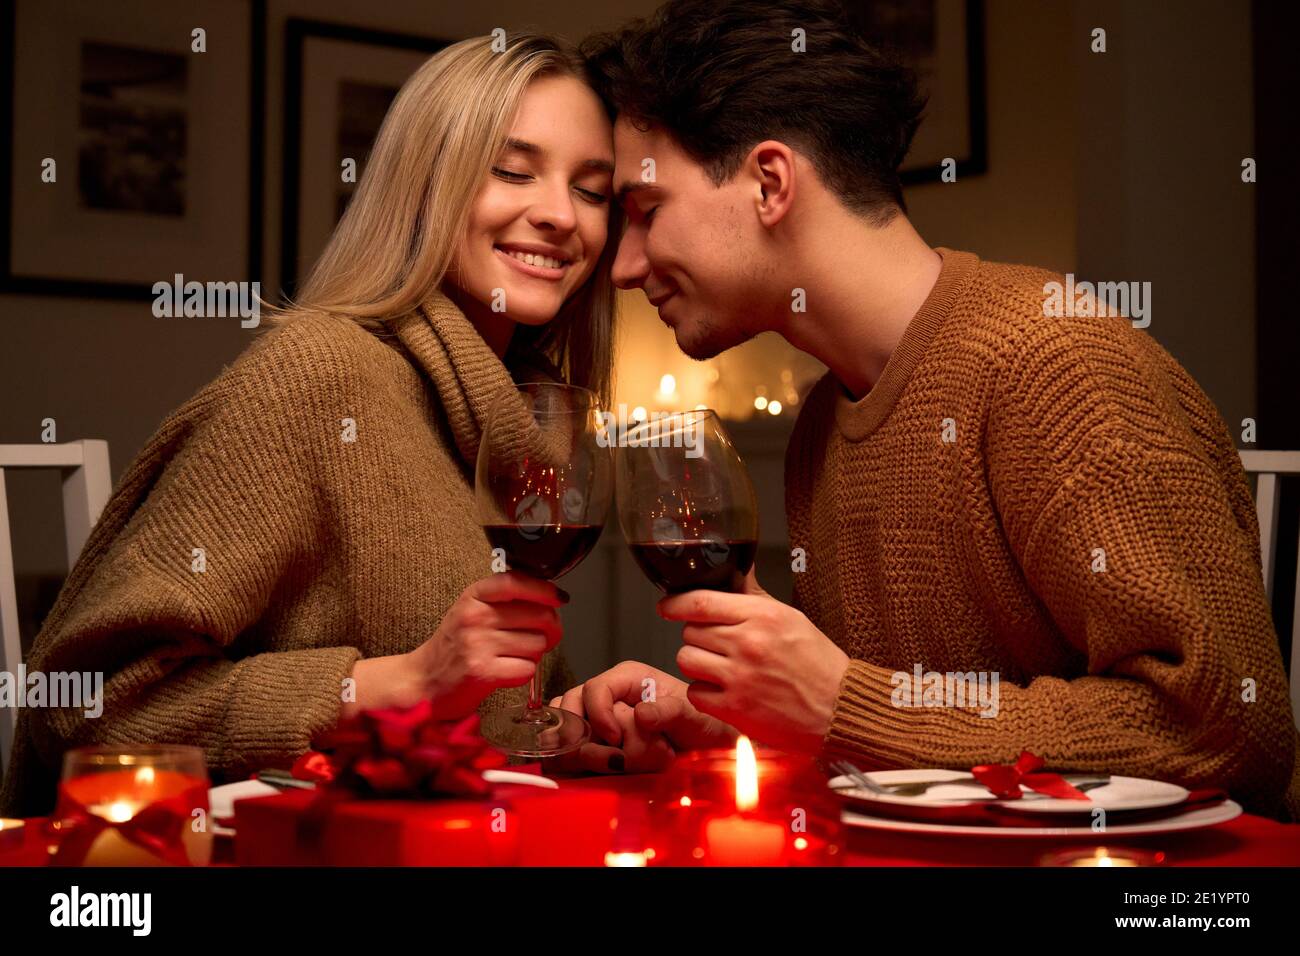 Felice coppia in amore bicchieri da clinking bere vino rosso dopo cena romantica. Foto Stock